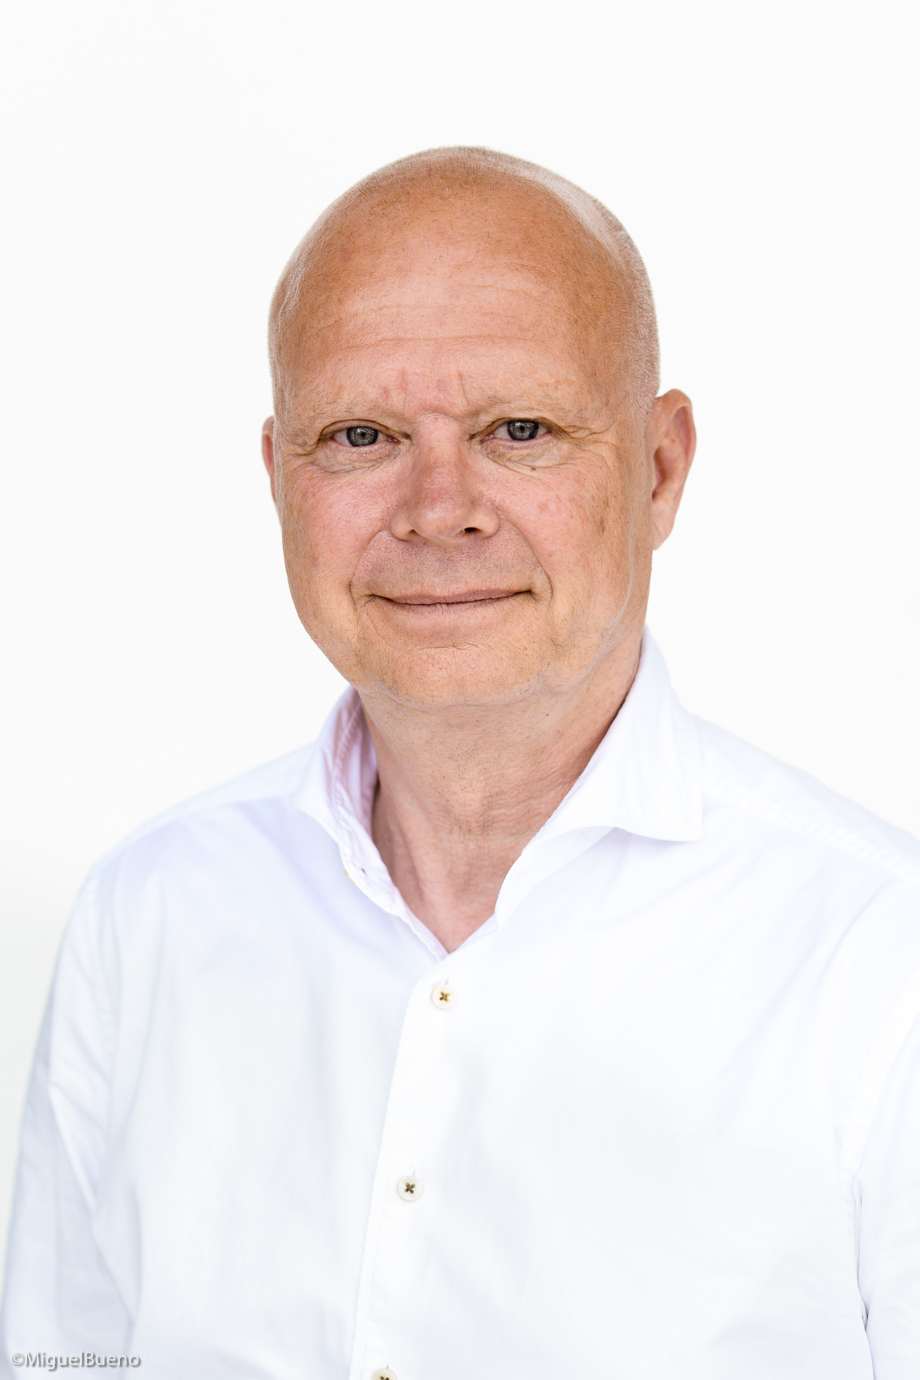 Lars Jørgensen